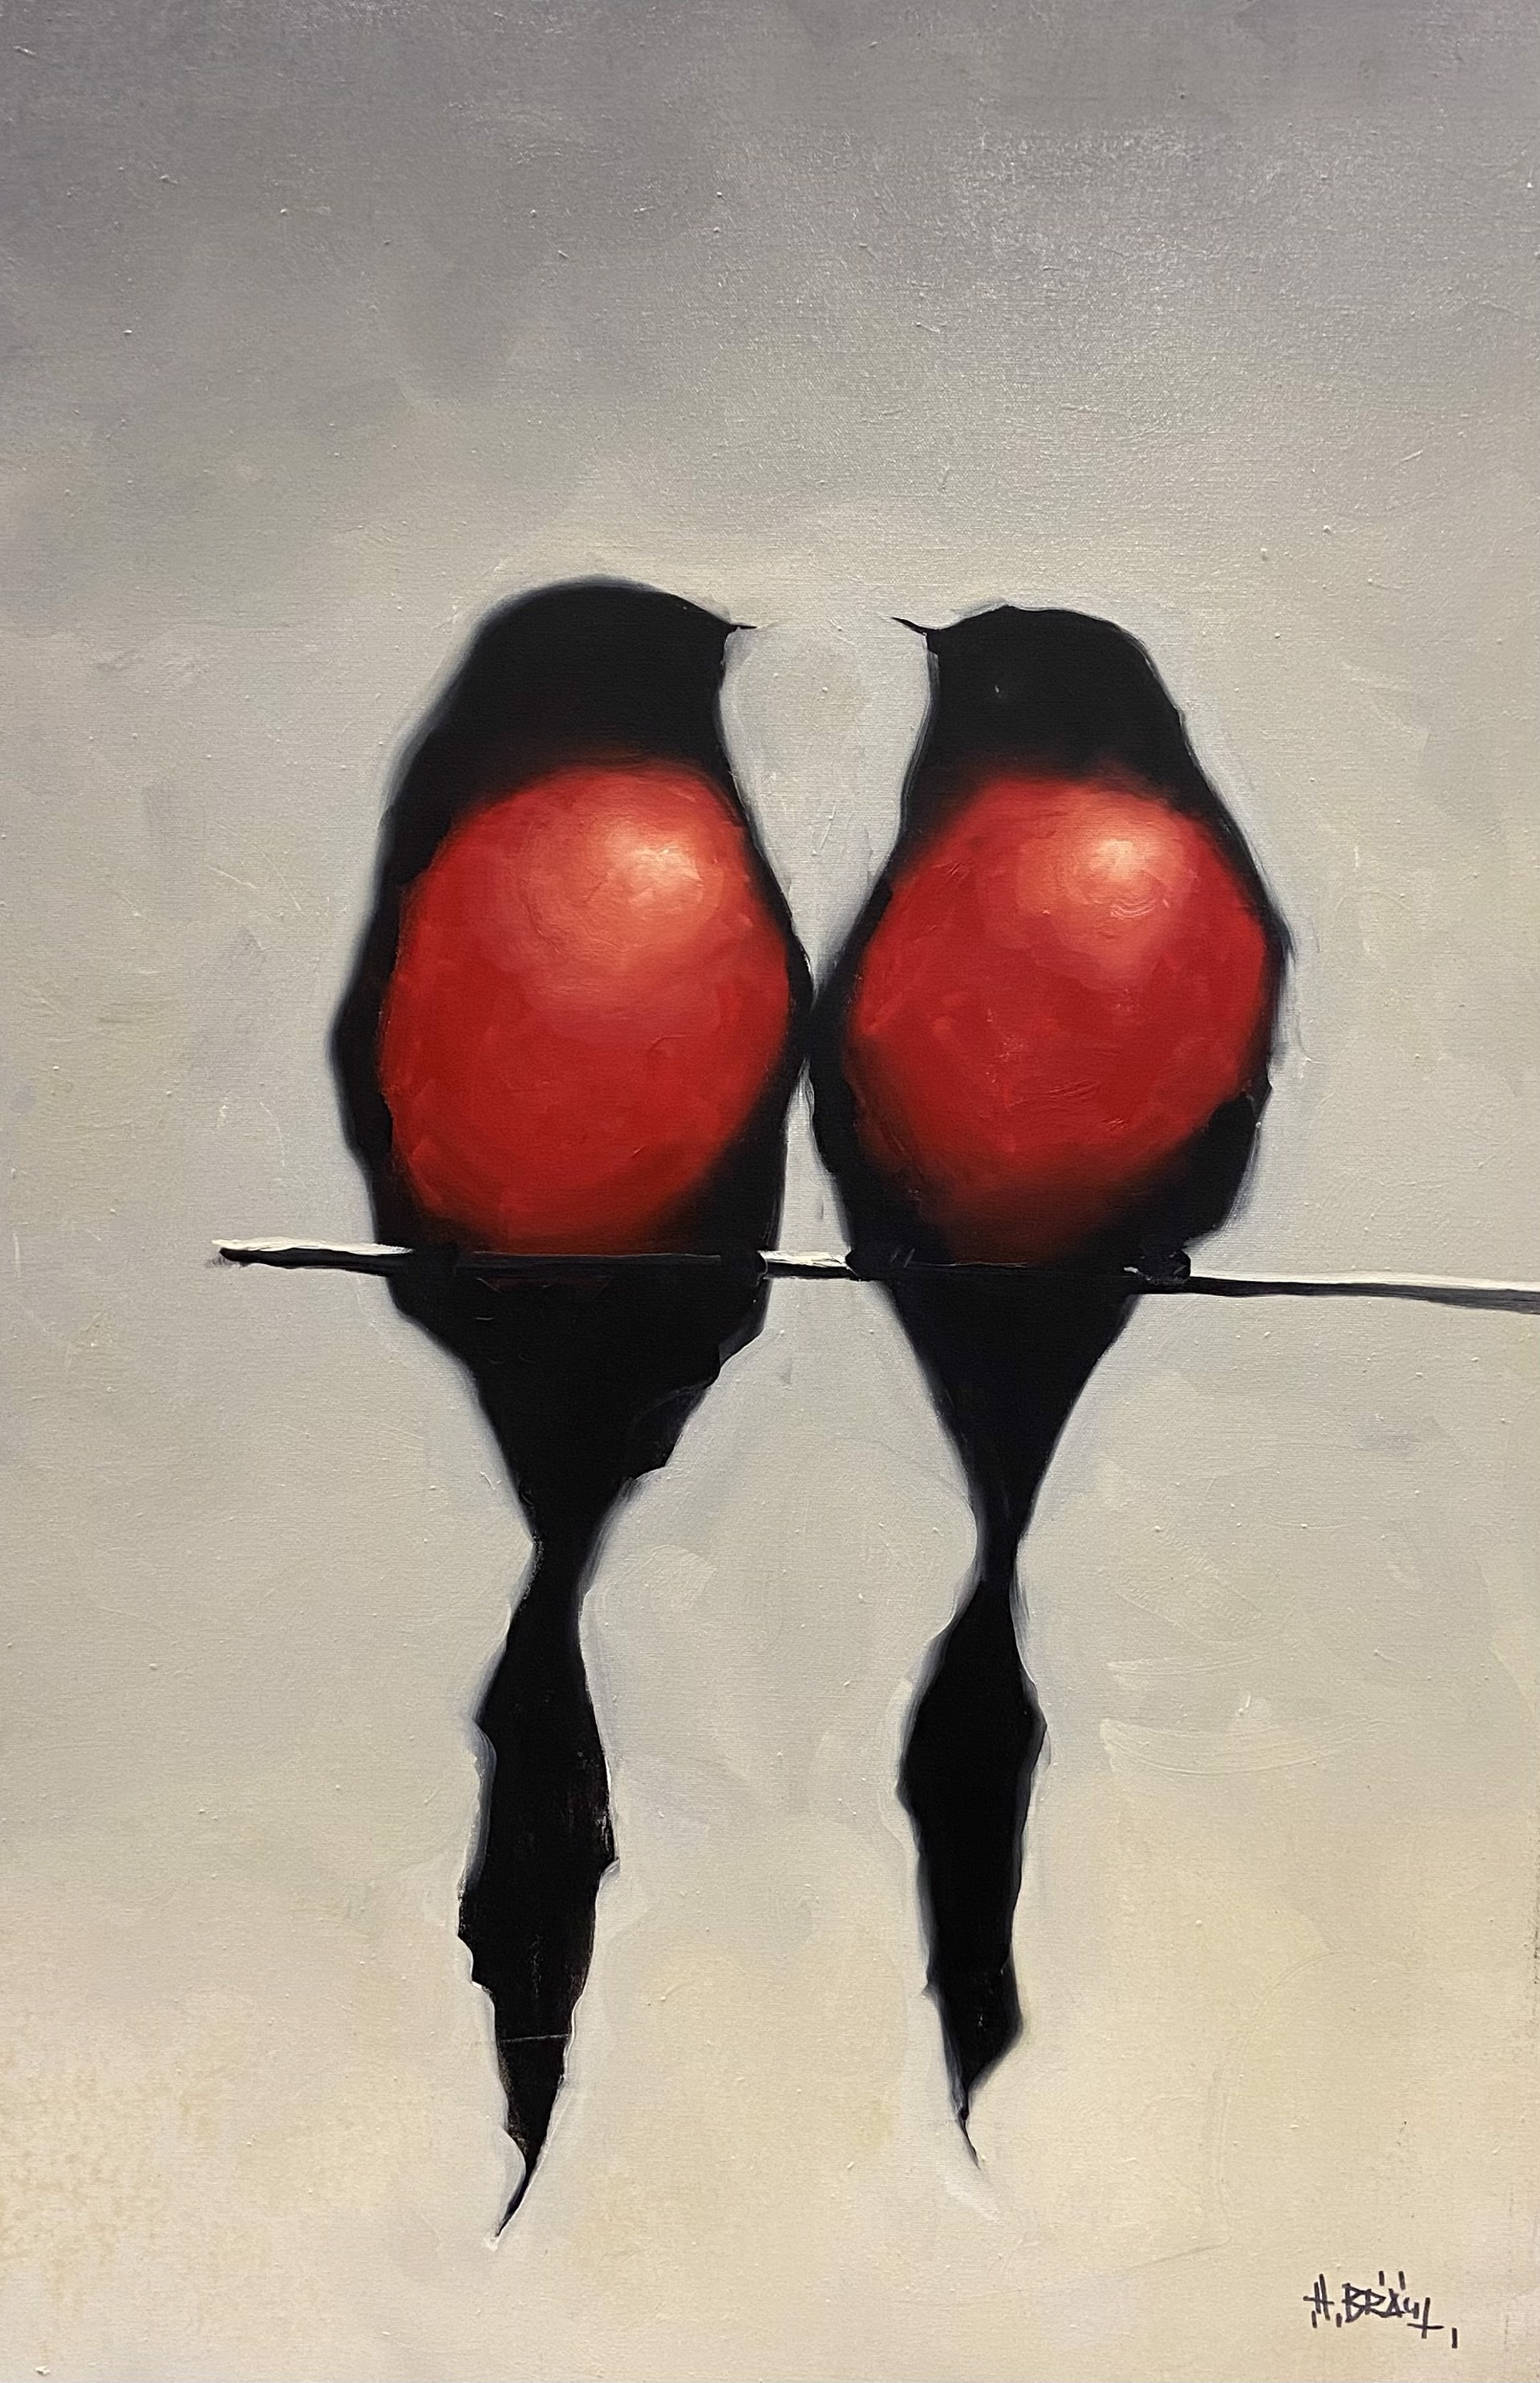 2 Red Birds by Harold Braul